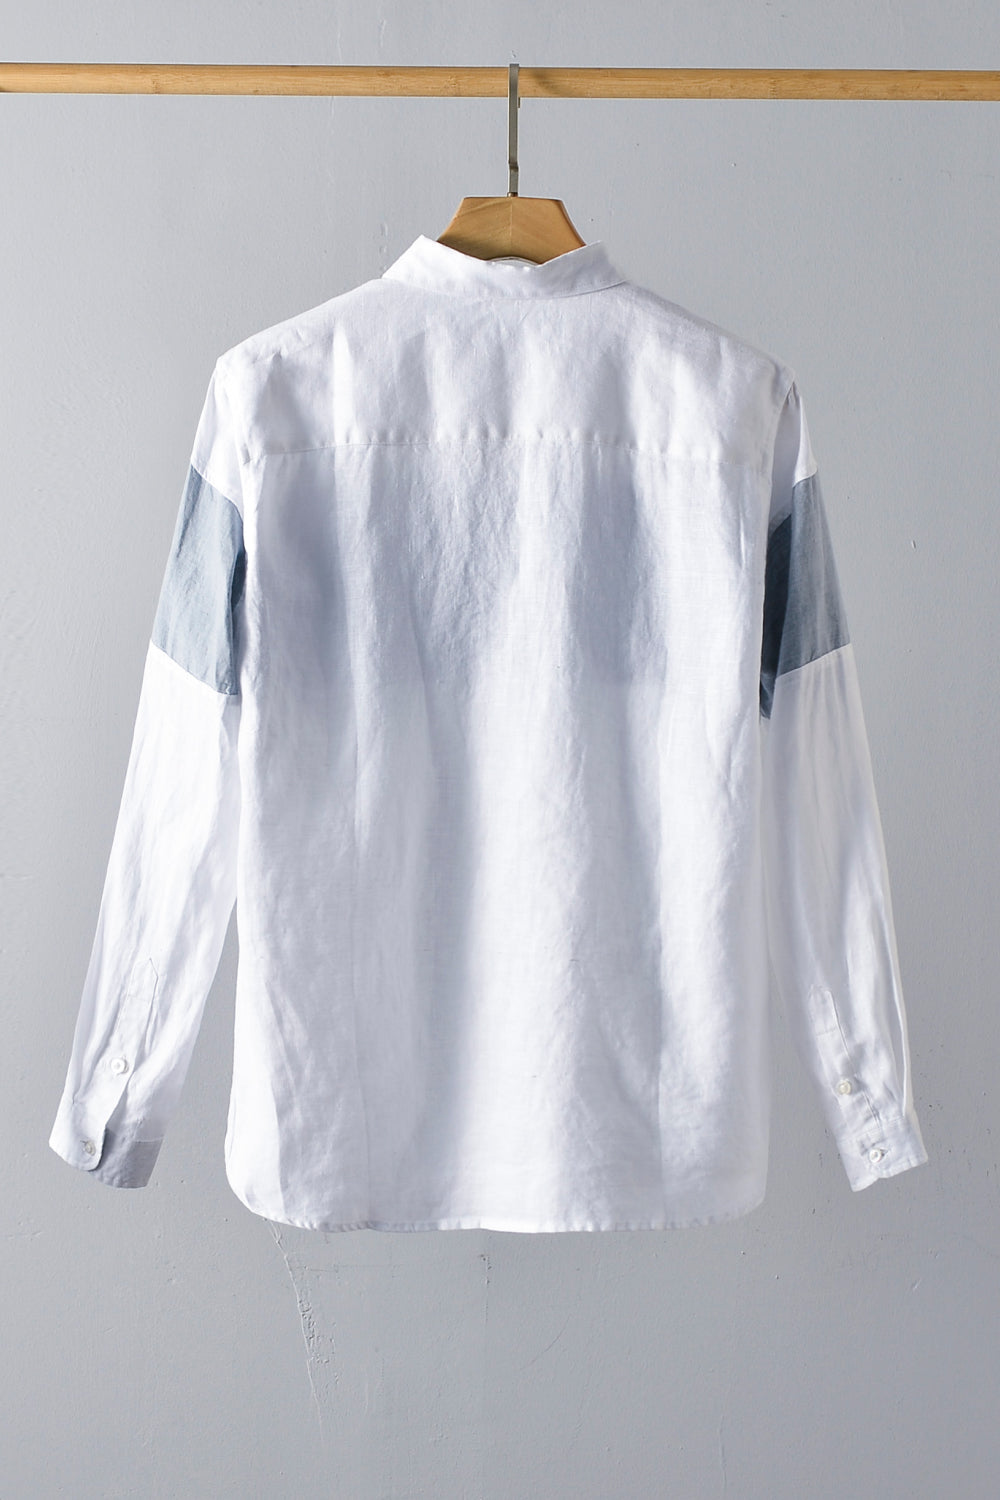 Clouded Canopy 100% Linen Men's Shirt